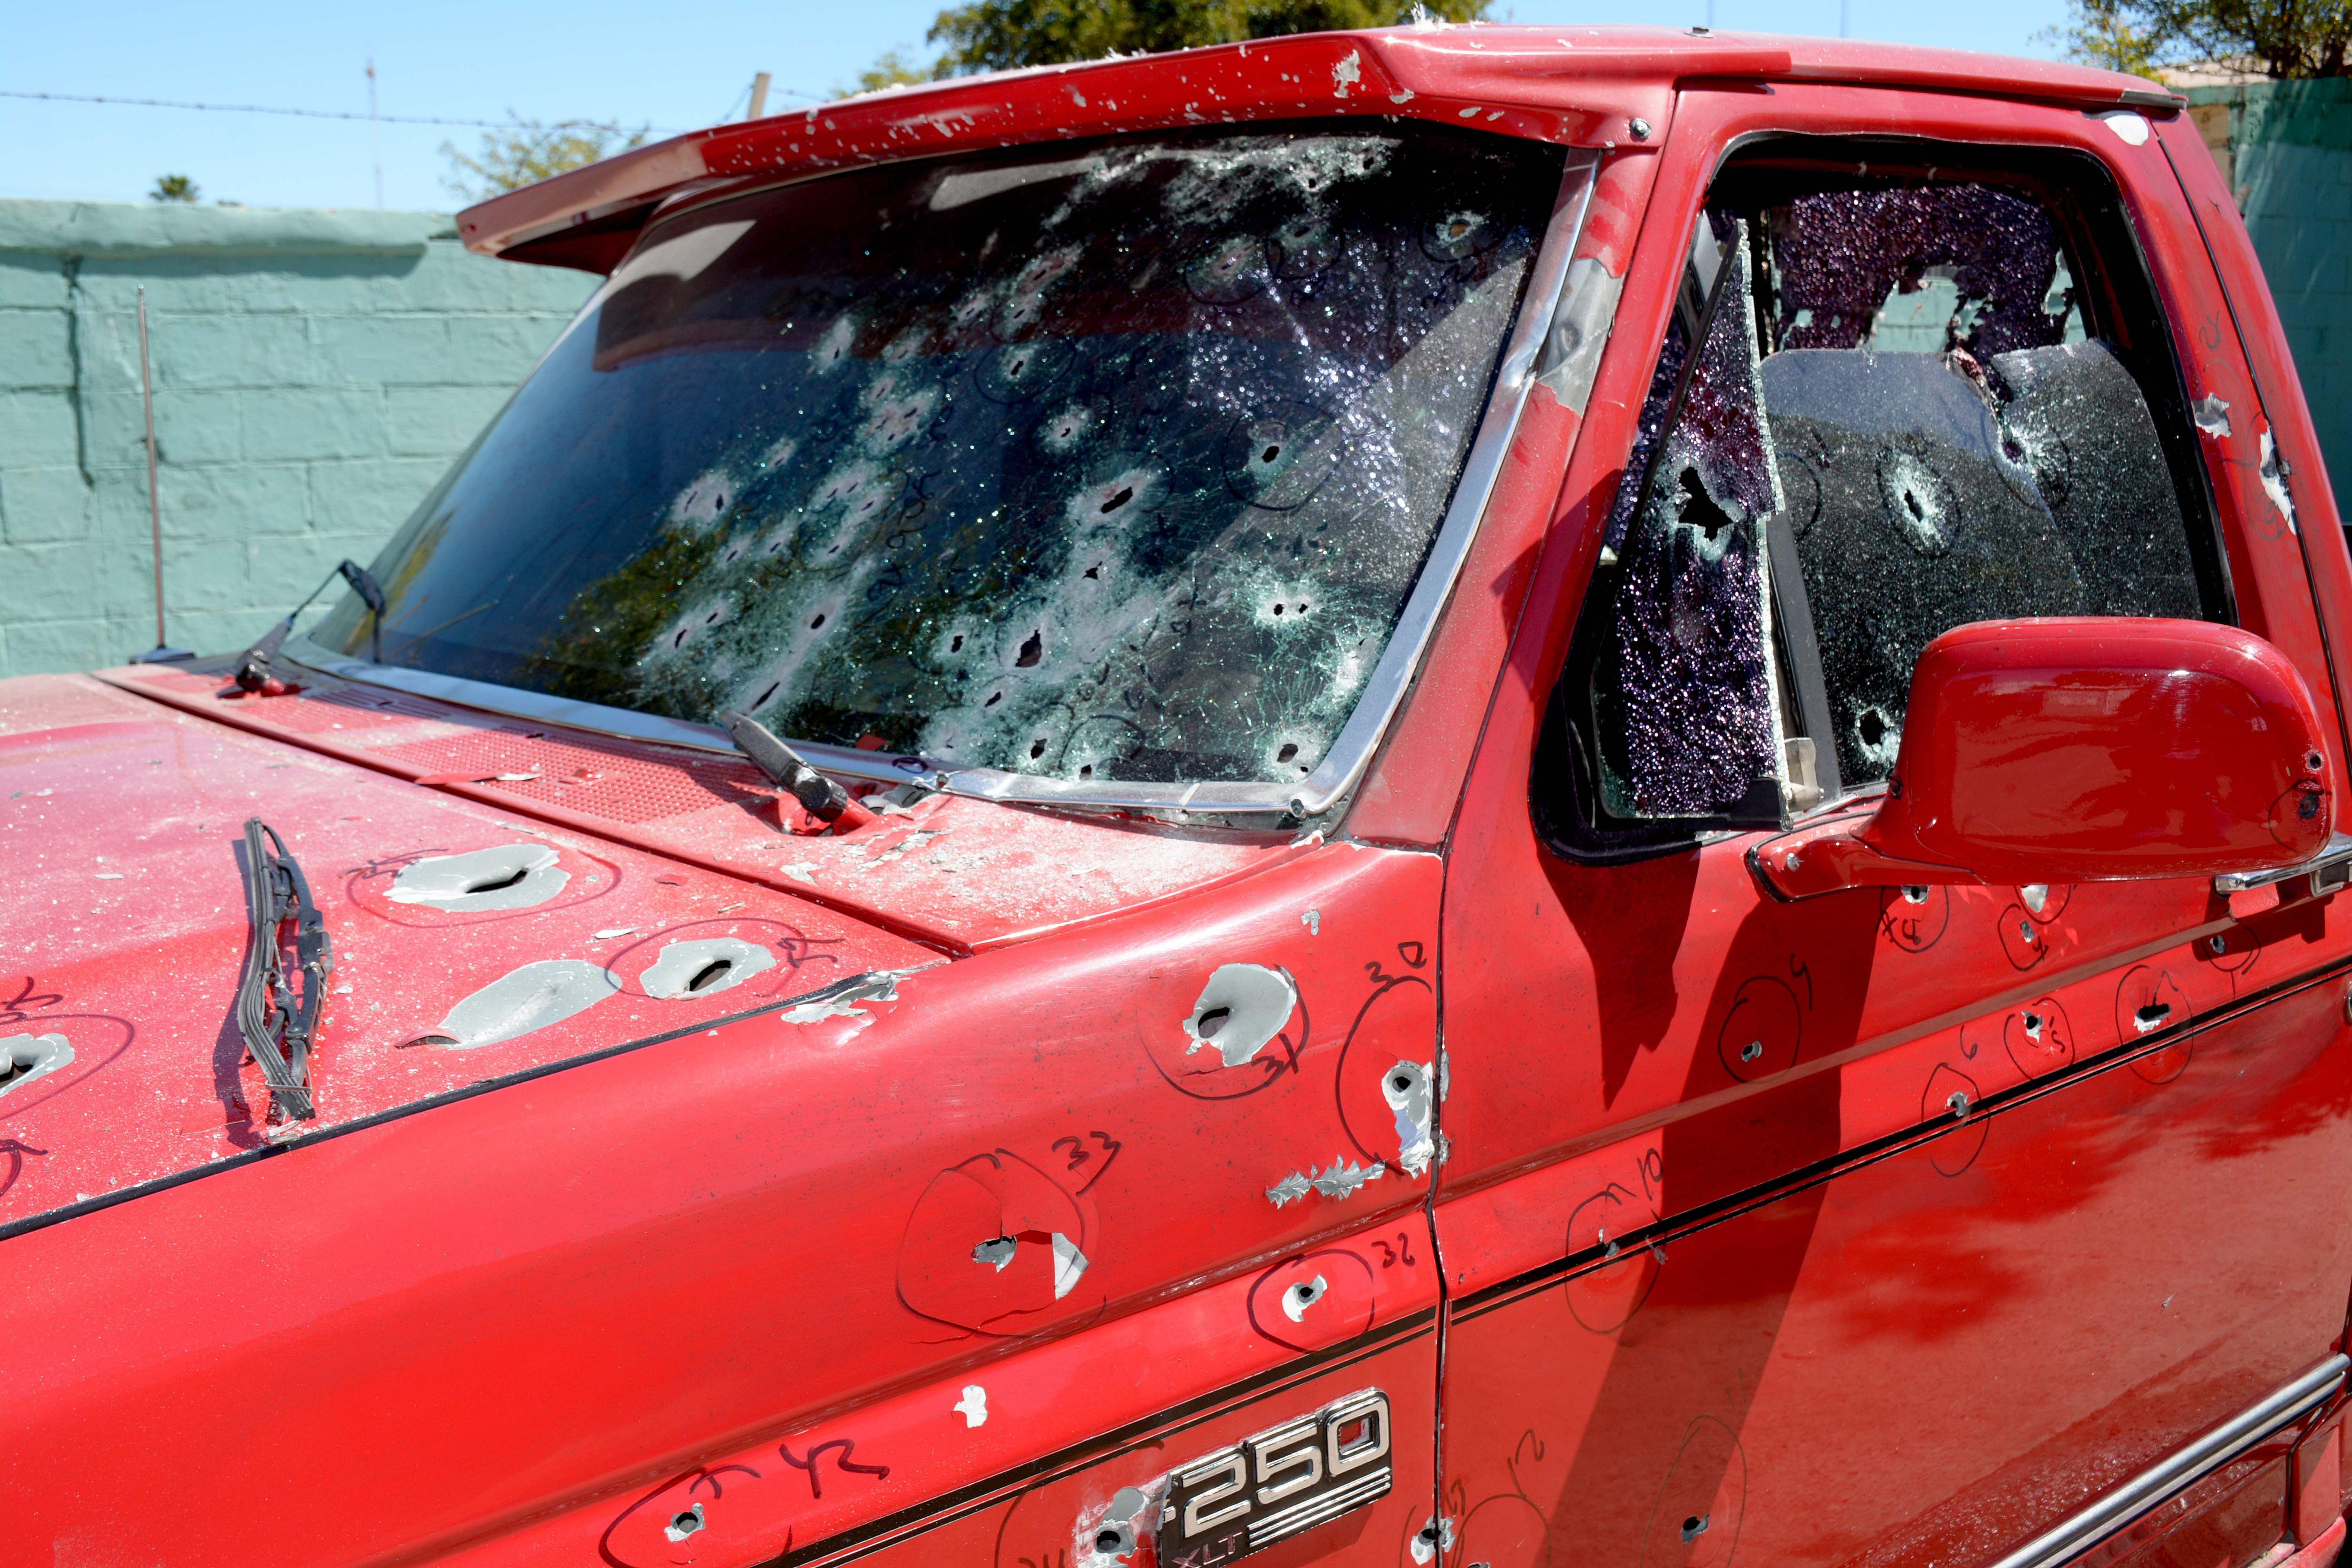  Escalada de violencia en Sinaloa culmina con asesinato de comandante policial